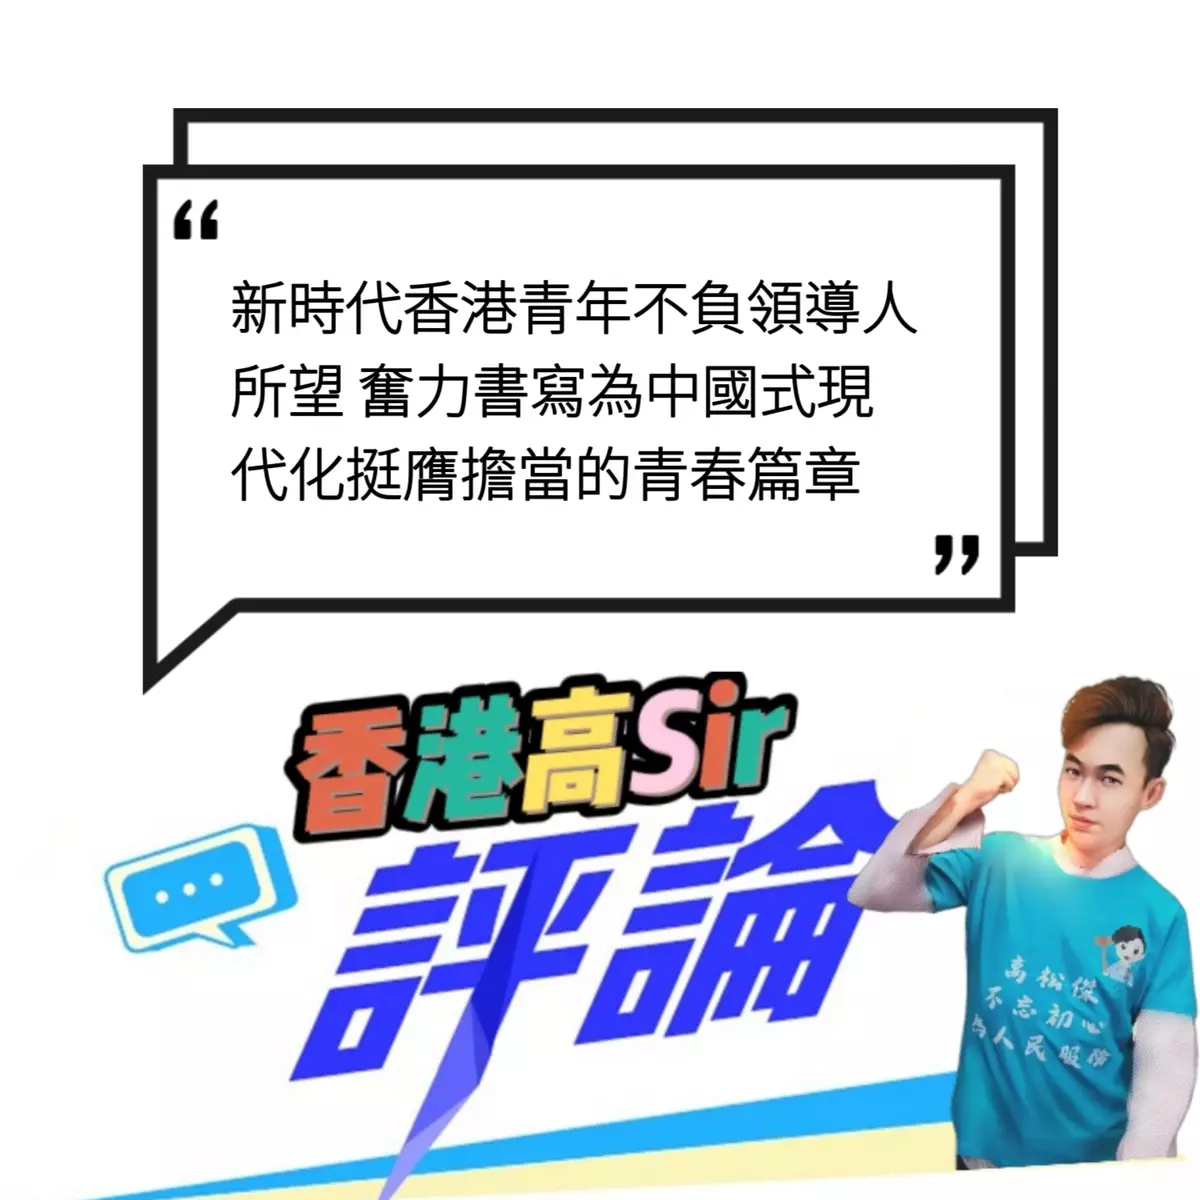 新時代香港青年不負領導人所望 奮力書寫為中國式現代化挺膺擔當的青春篇章